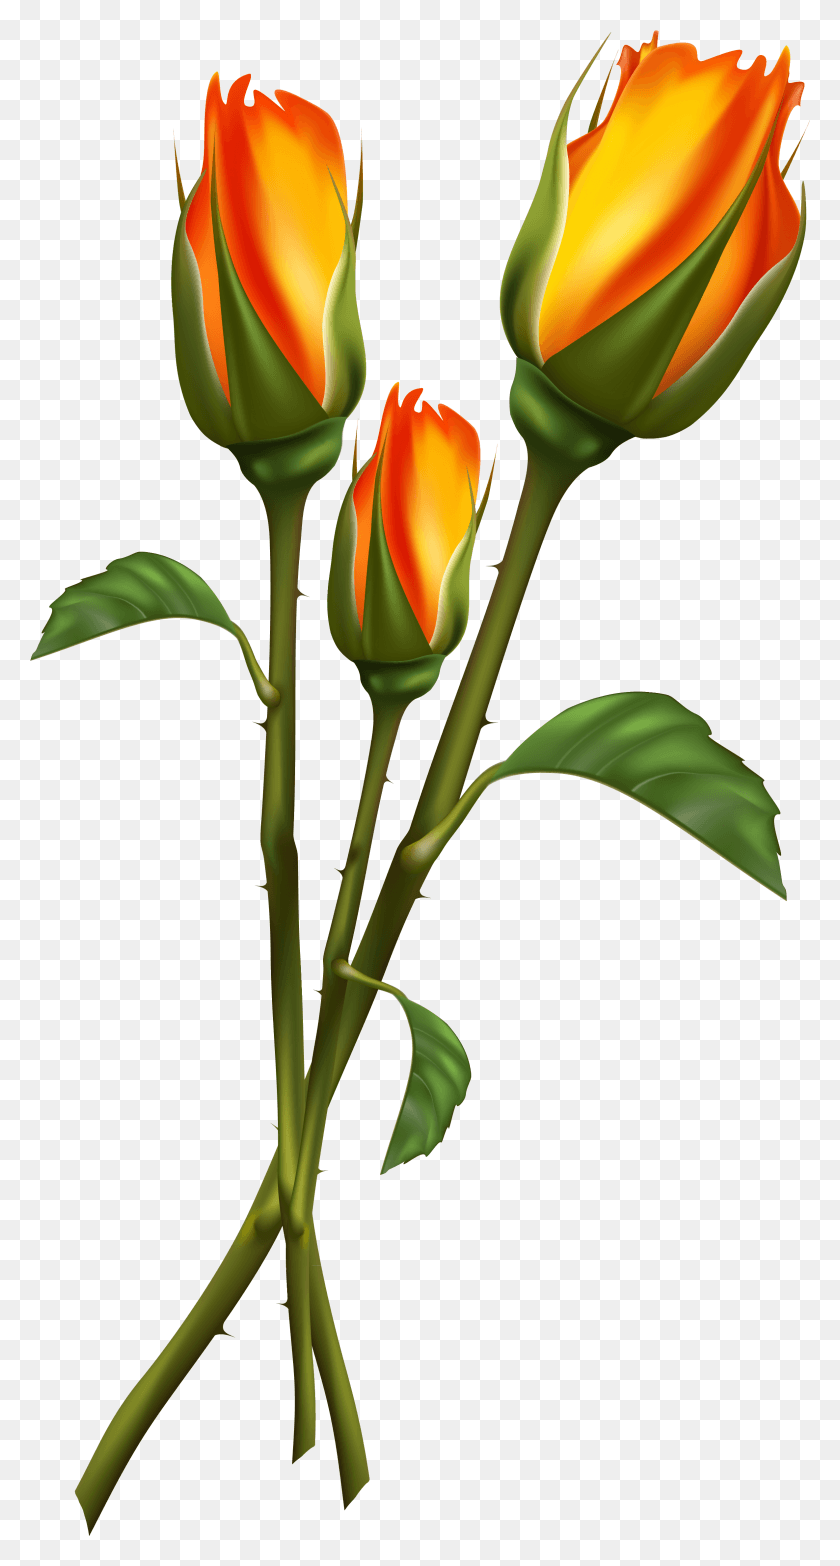 2369x4575 Imágenes De Alta Calidad Clipart Plantas Tulip Hermosa Flor Dibujo, Planta, Rosa, Flor Hd Png Descargar